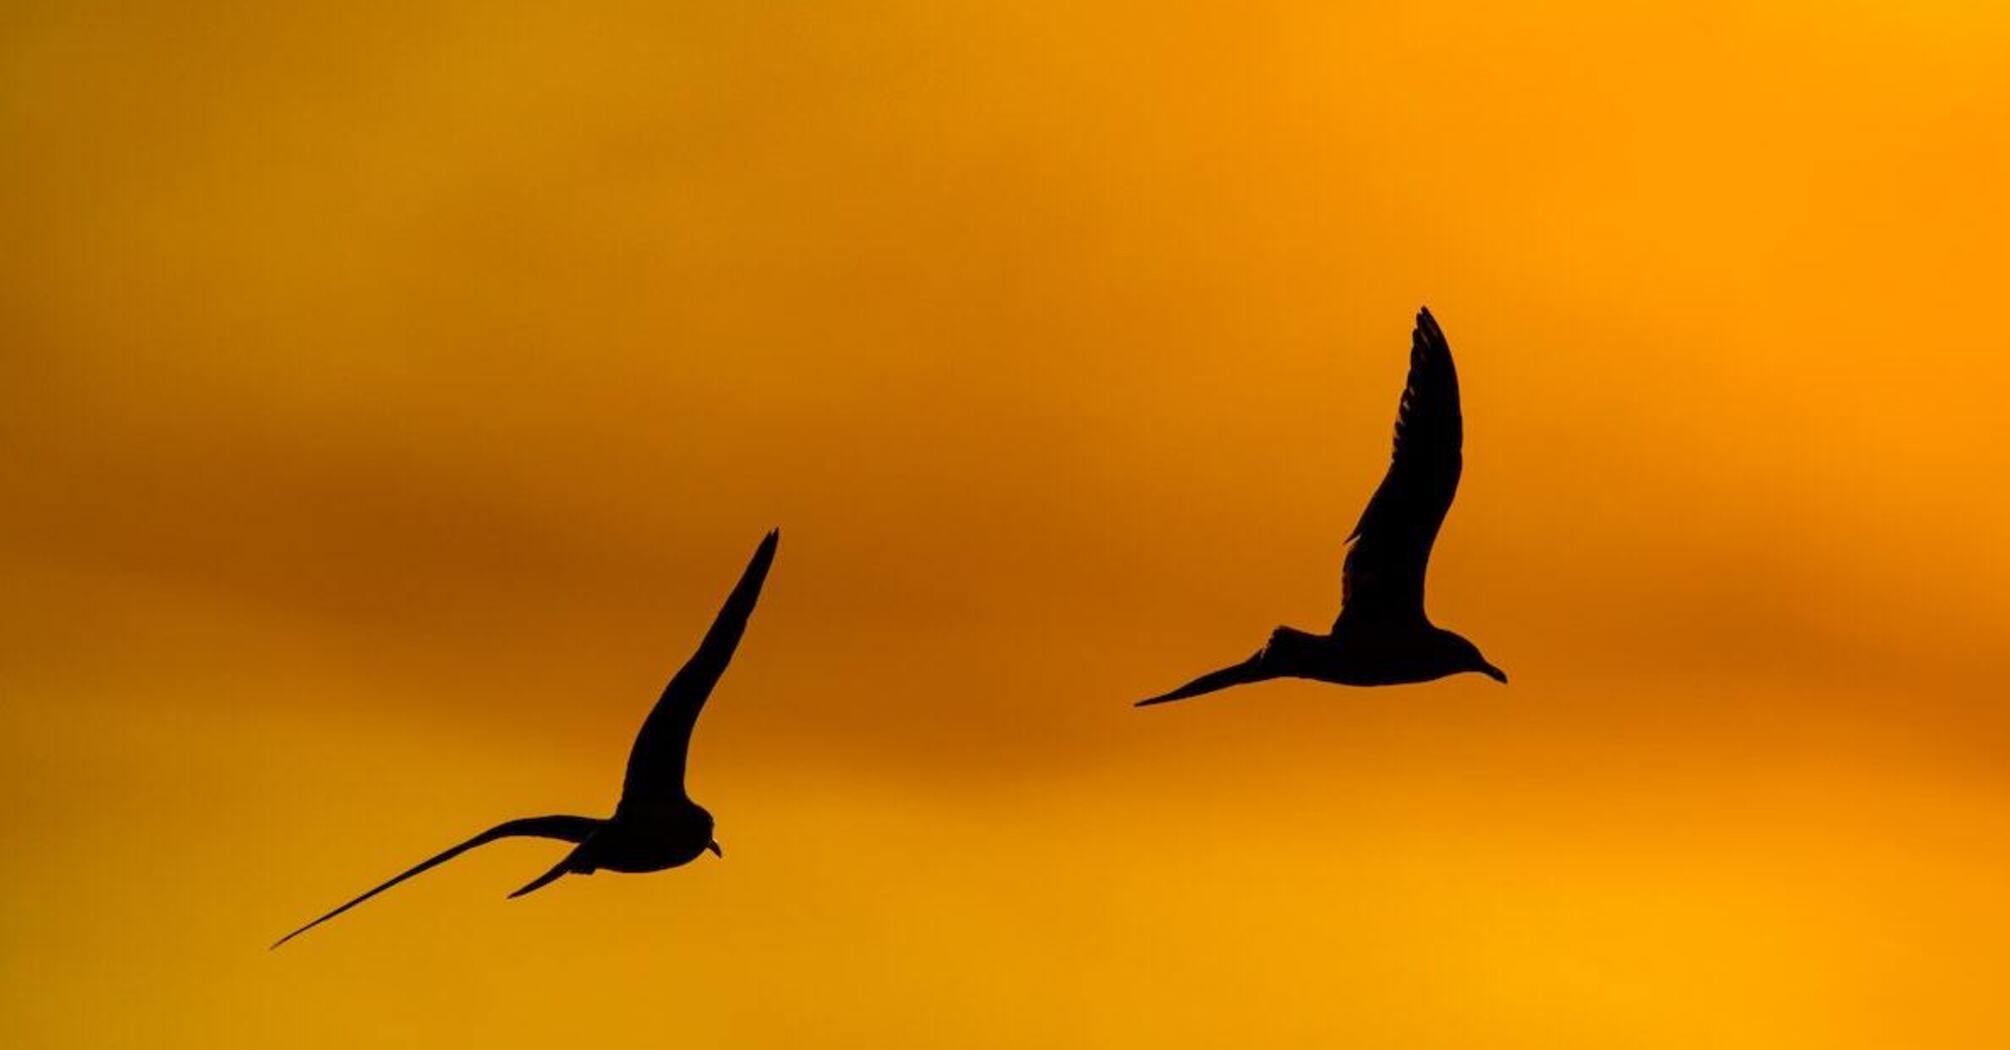 Burze magnetyczne zmusiły ptaki do zmiany migracji - naukowcy